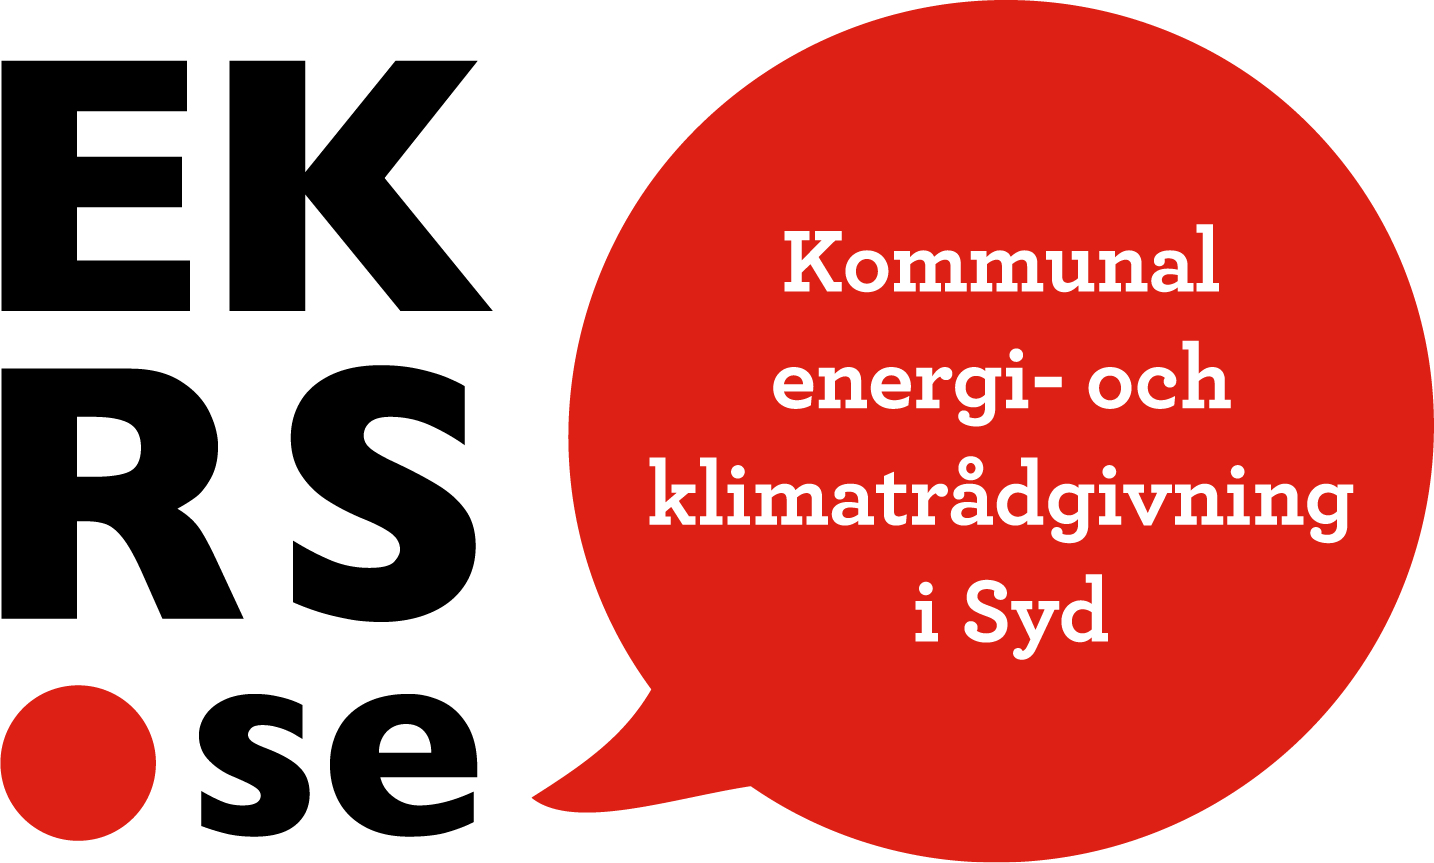 EKRS.se, Kommunal energi- och klimatrådgivning i Syd